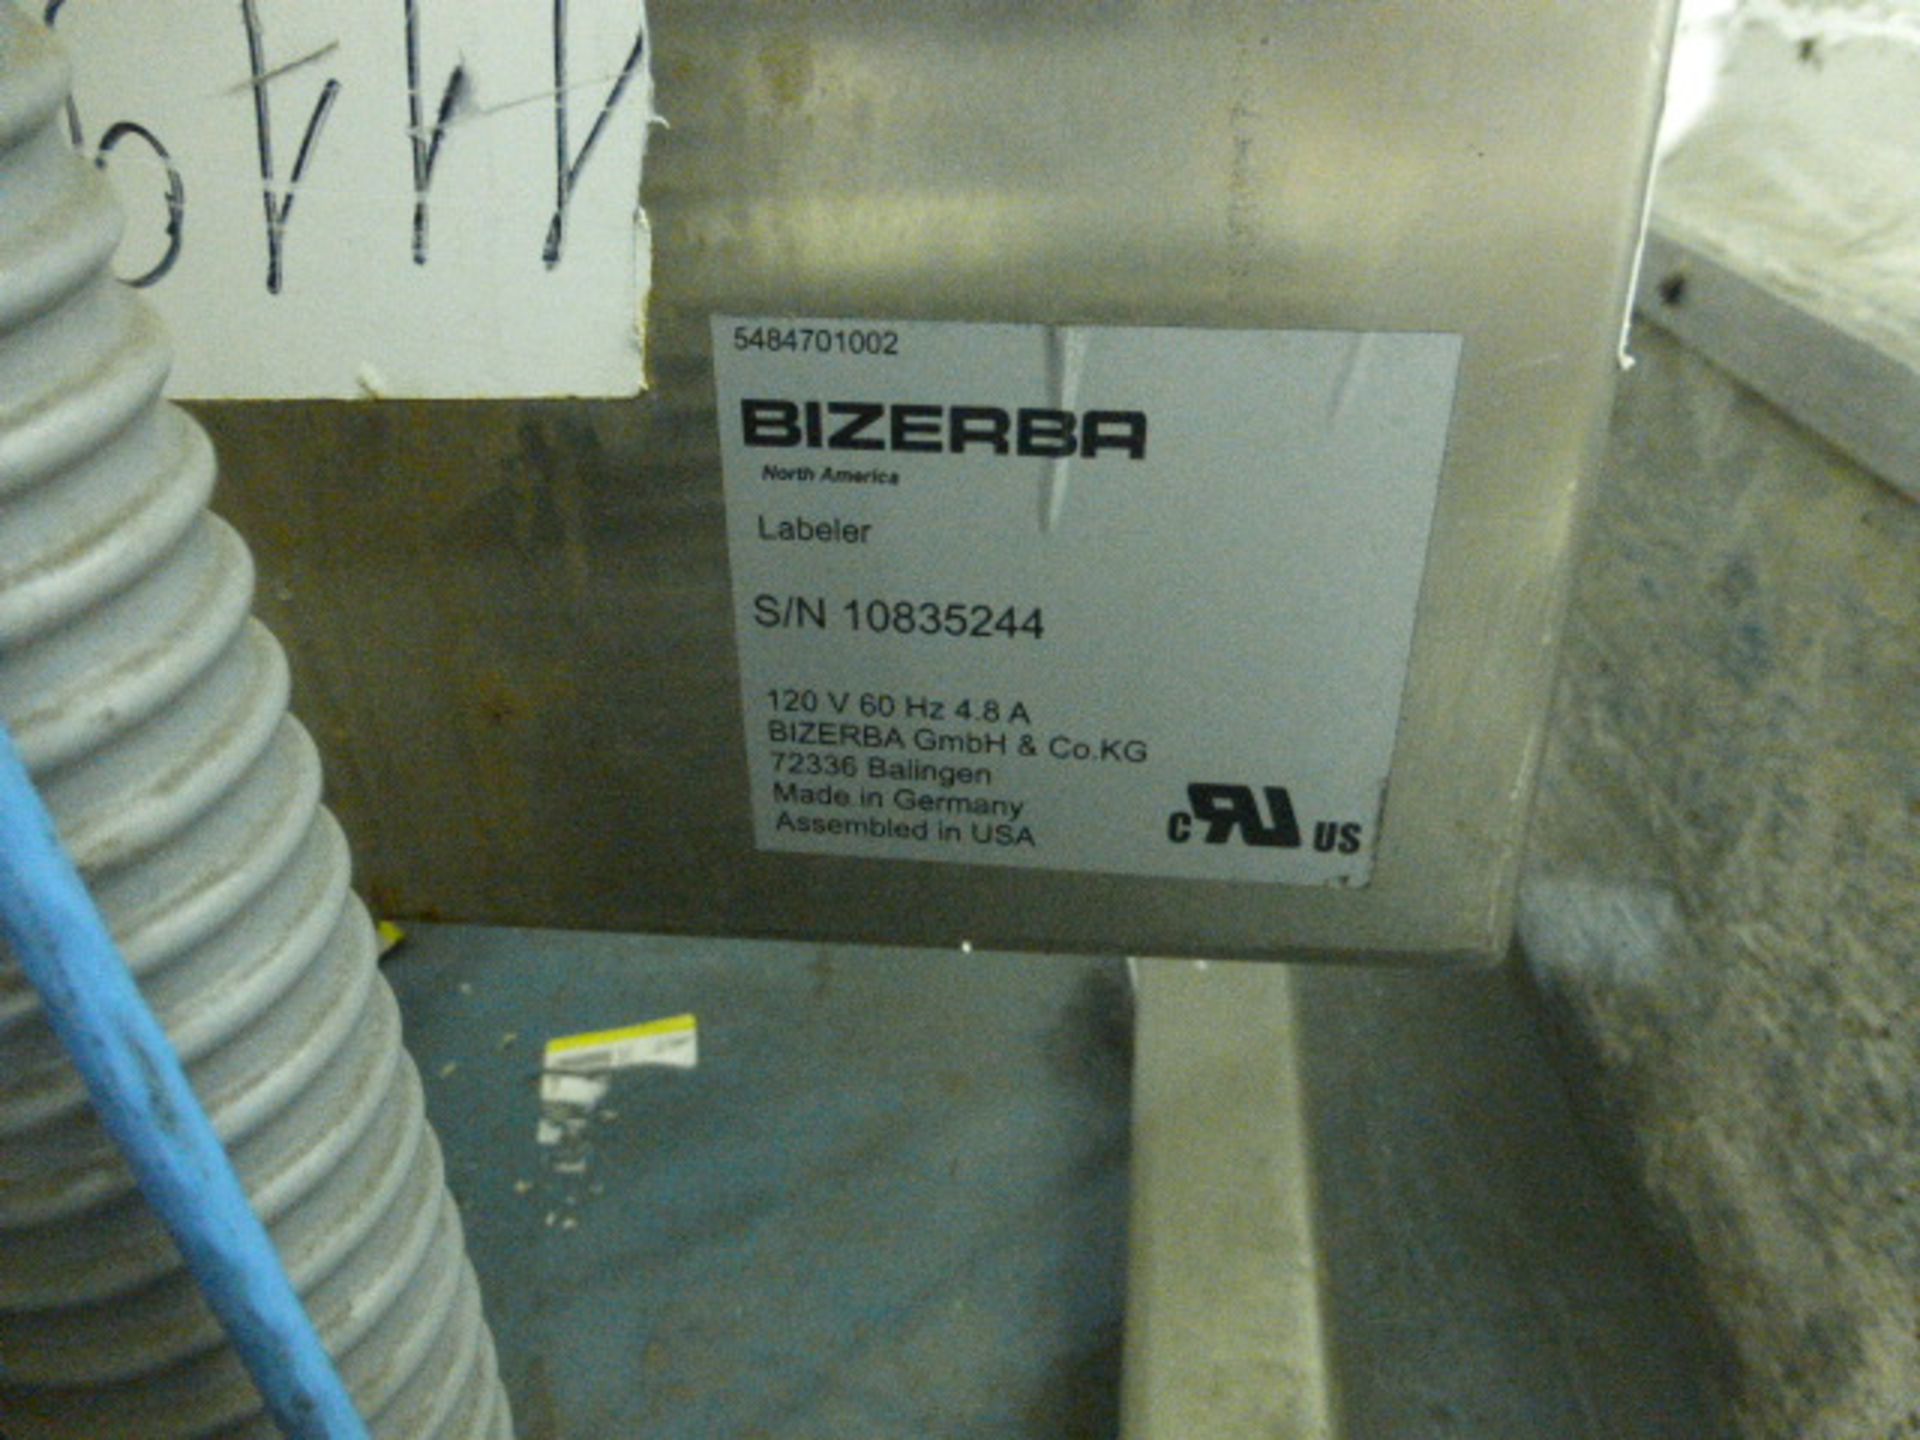 Bizerba labeler (SLAVE), p/n 5484701002, s/n 10835244 - Image 2 of 2